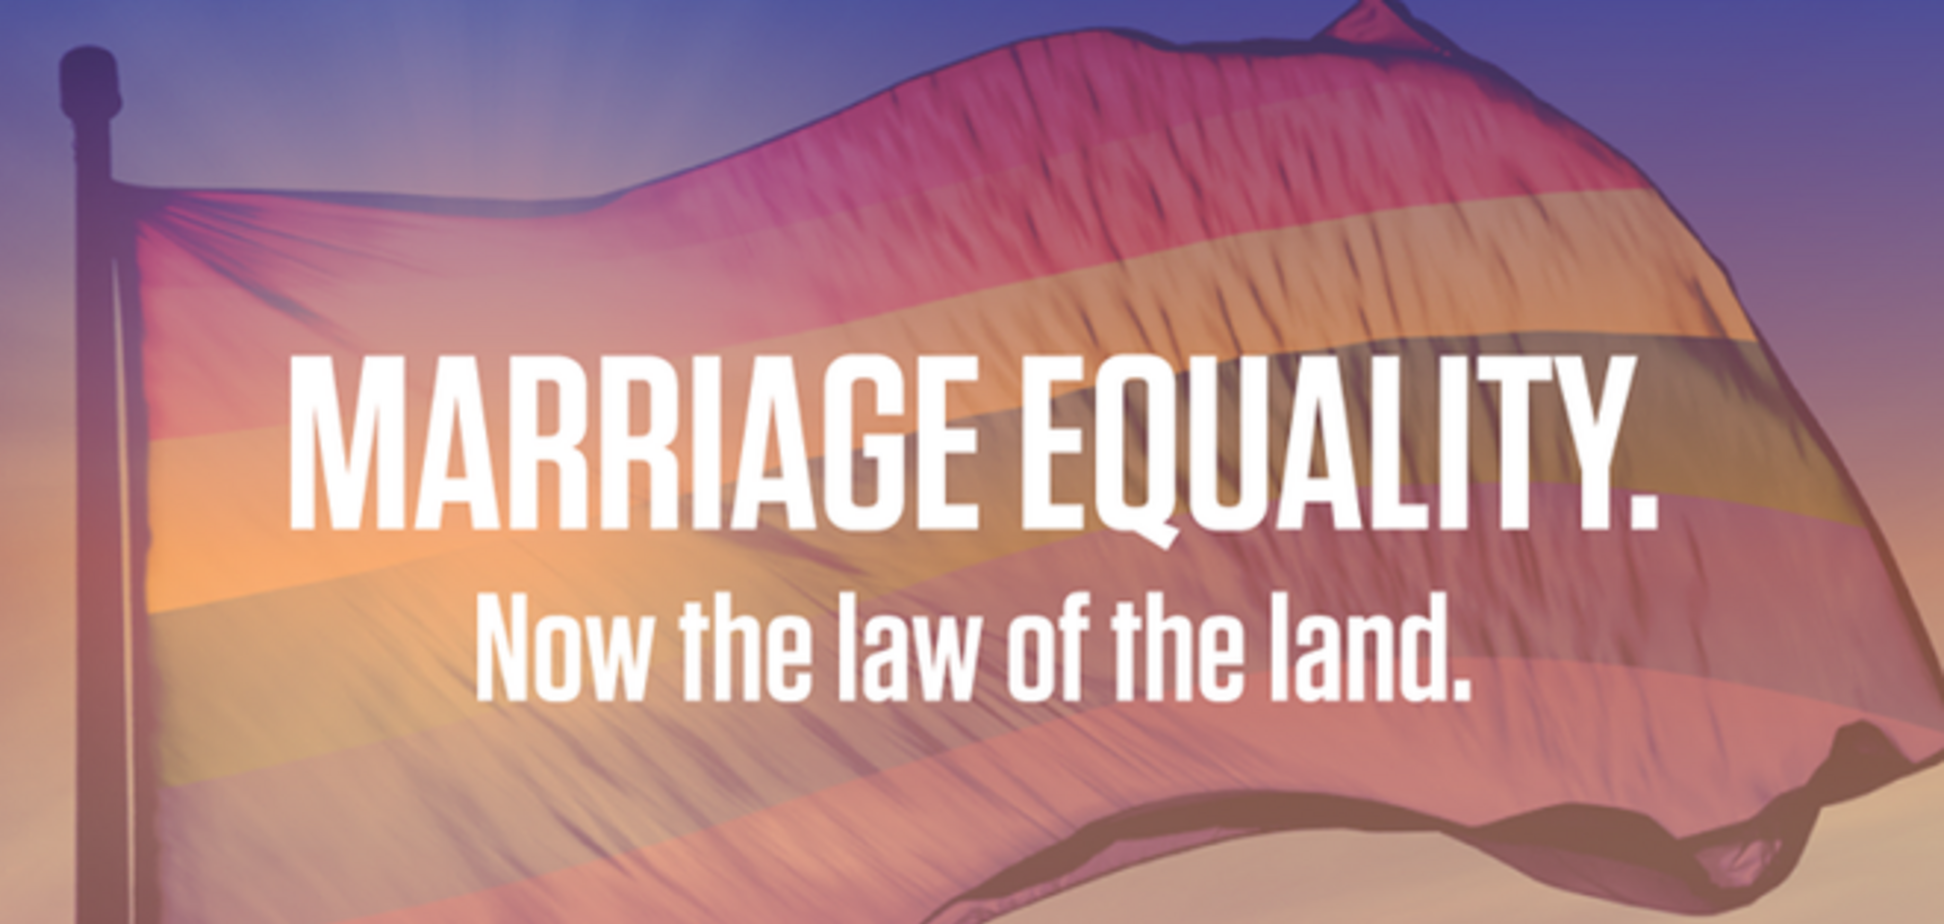 Любов перемогла! Обама підтримав легалізацію одностатевих шлюбів у США